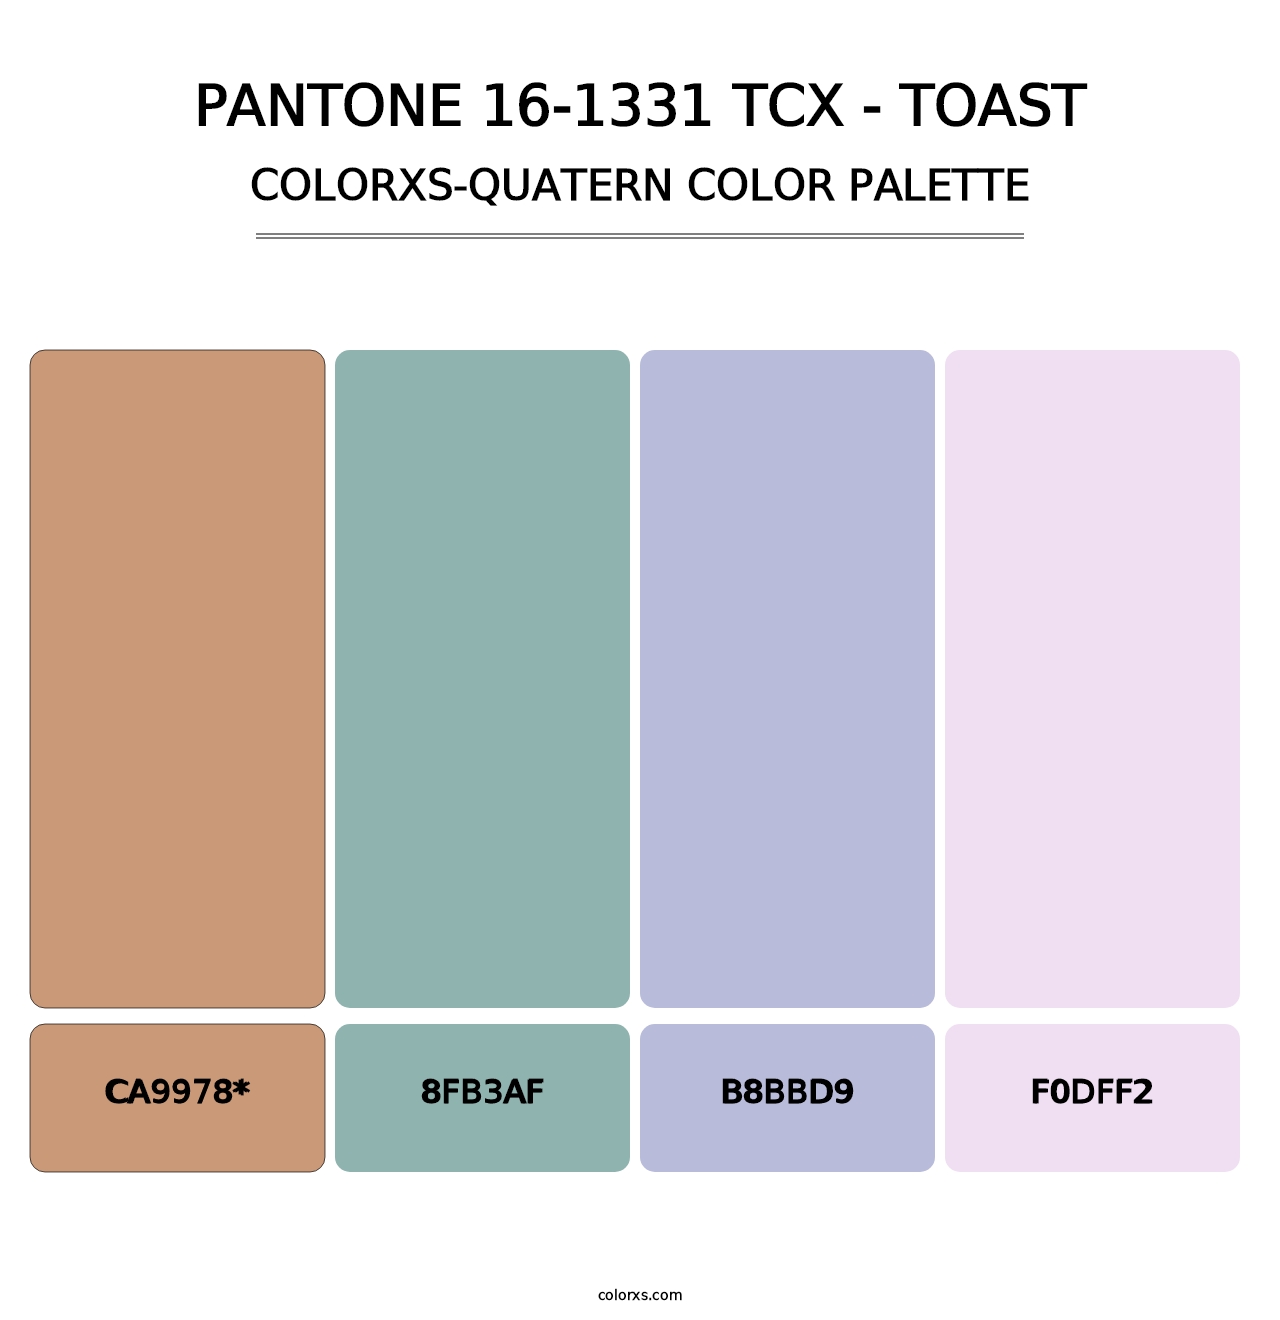 PANTONE 16-1331 TCX - Toast - Colorxs Quatern Palette